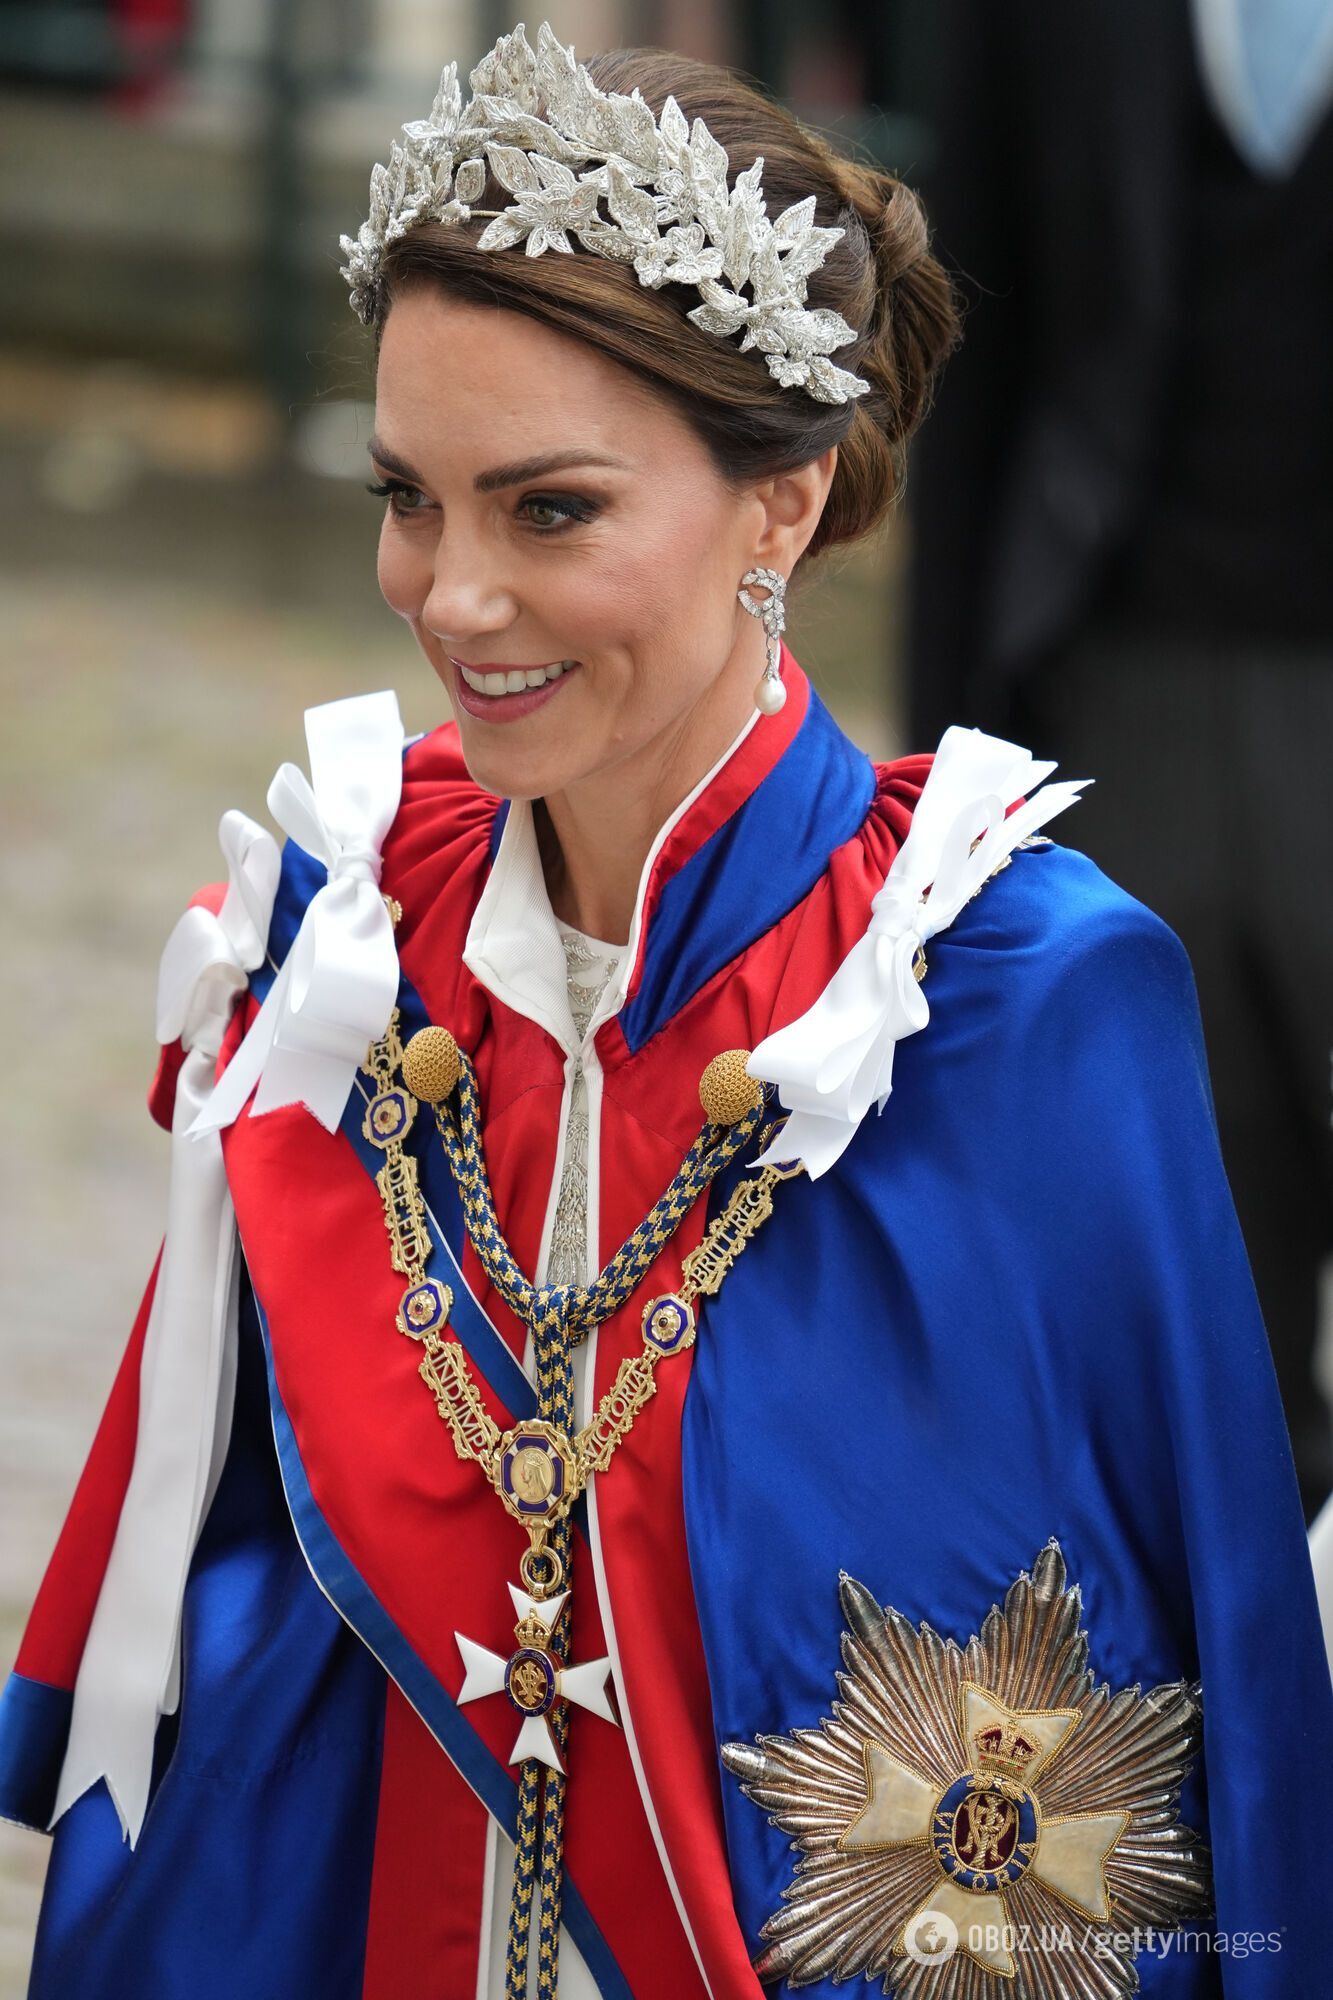 Нова ера монархії: стало відомо, що означали головні убори Кейт Міддлтон та принцеси Шарлотти на коронації Чарльза ІІІ